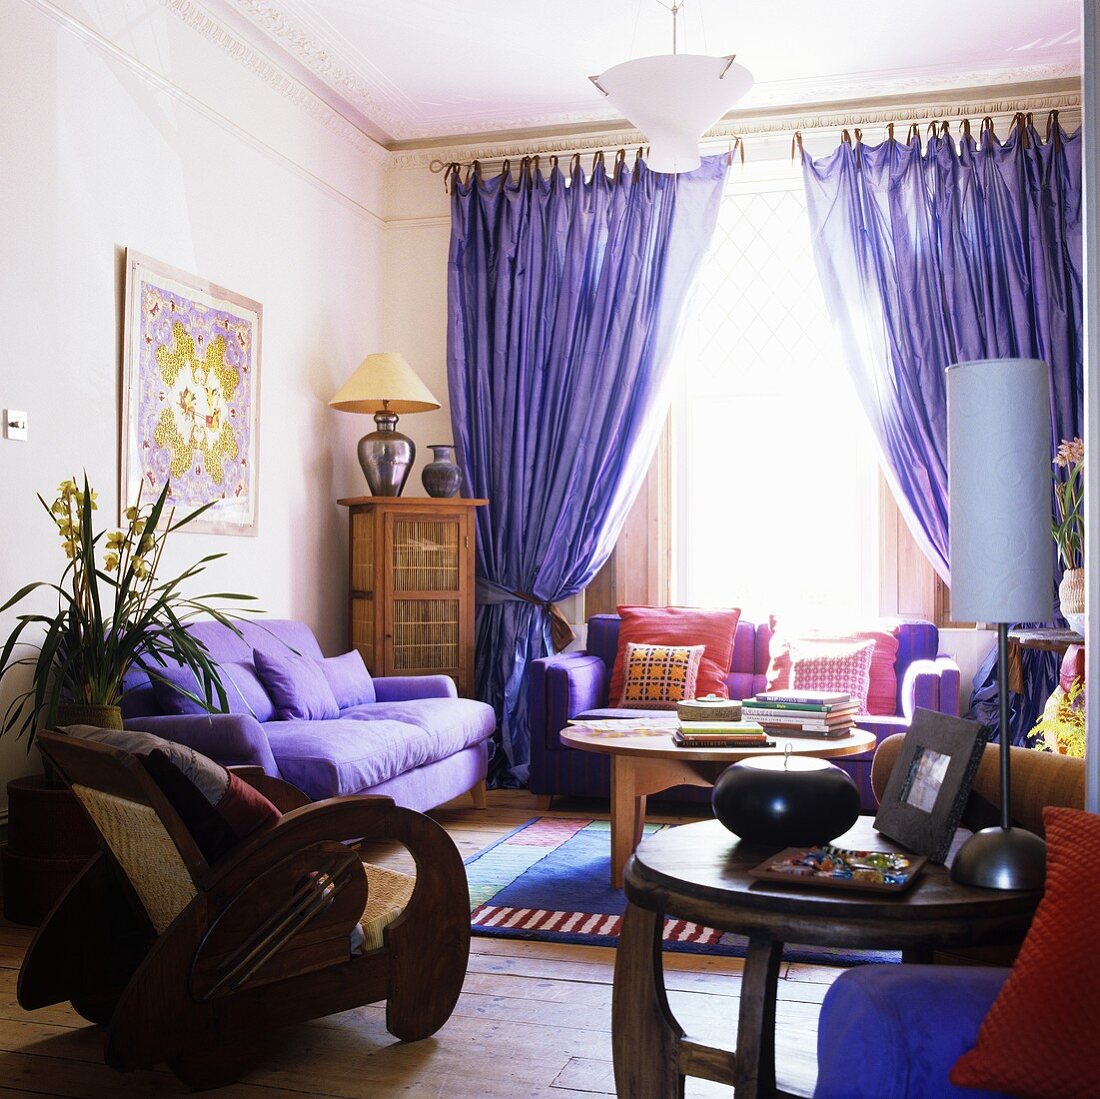 Wohnraum mit Polstermöbeln und violettem Vorhang am Fenster